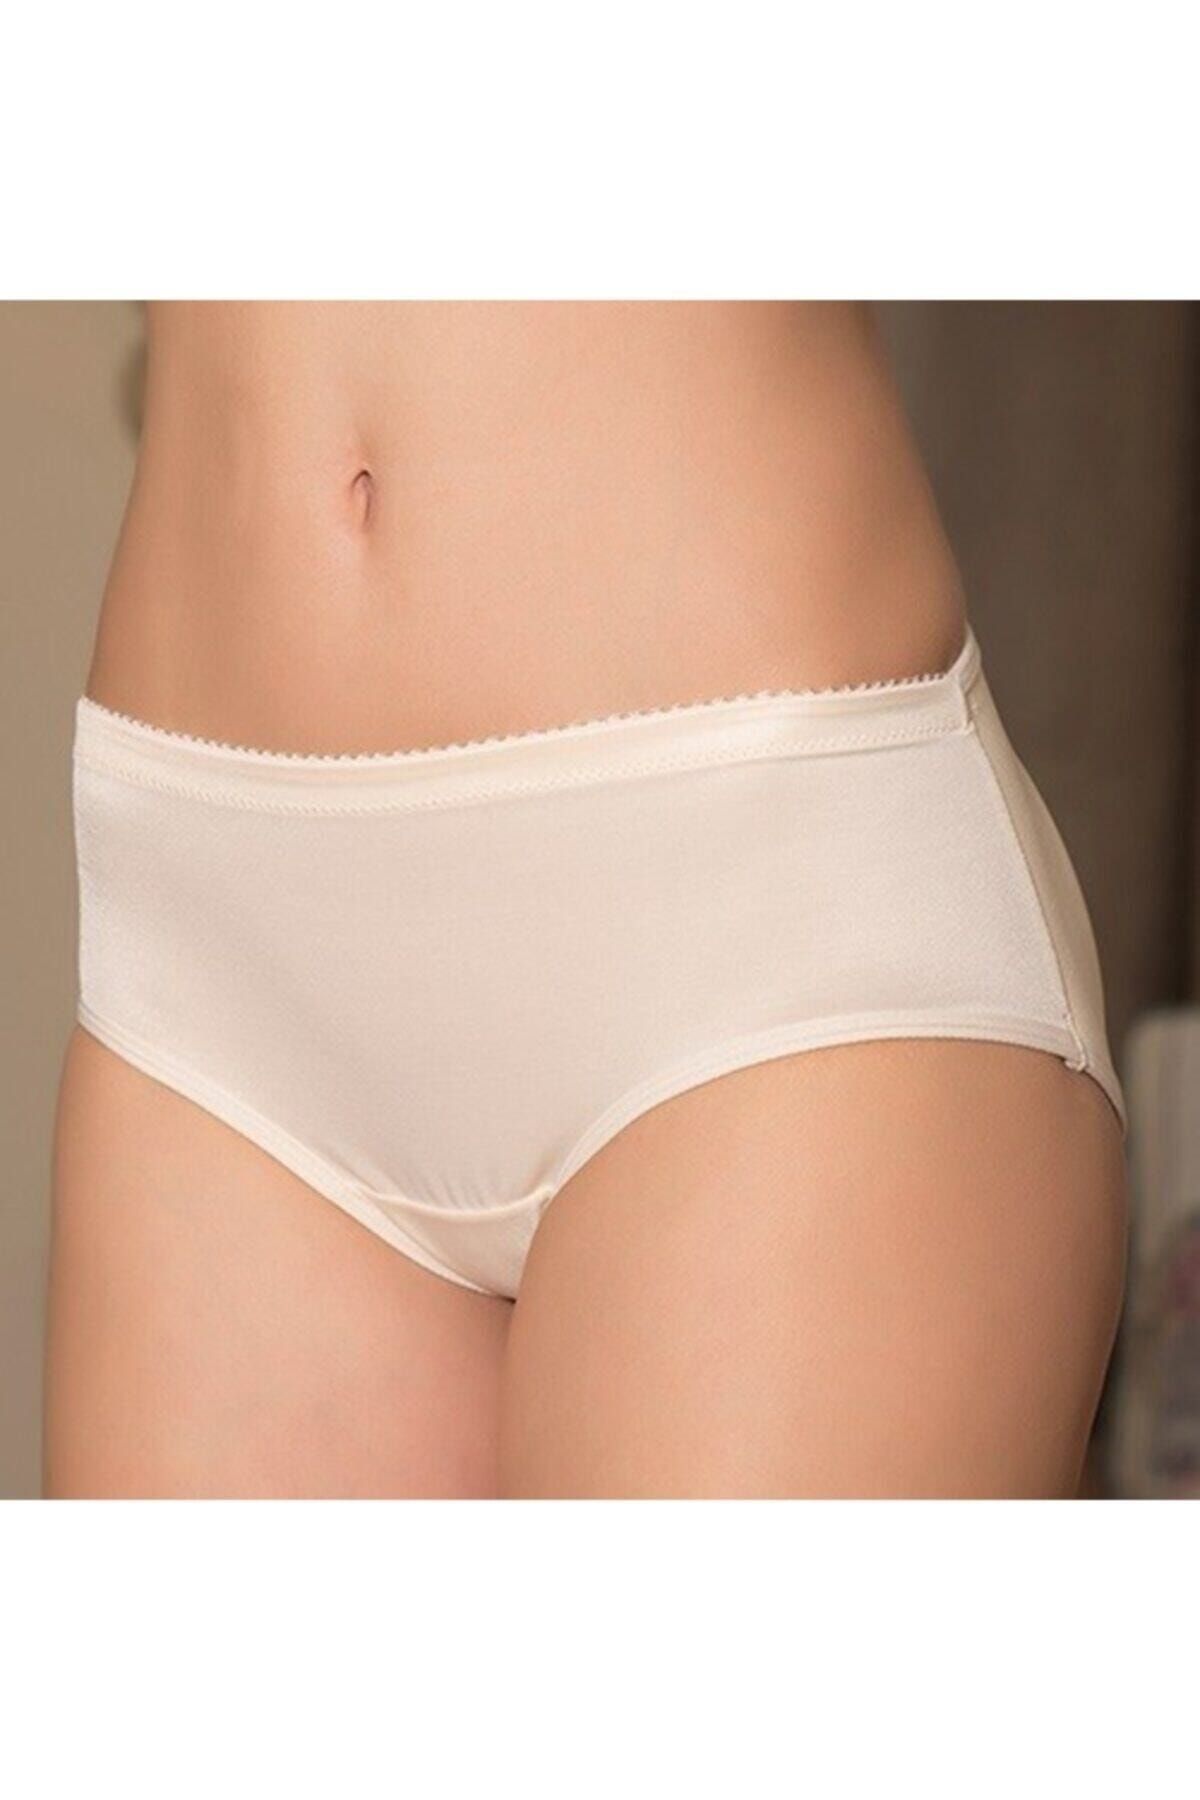 Anıl Women's Beige Micro Pop Up Hip Lifter Panties 2689 - Trendyol